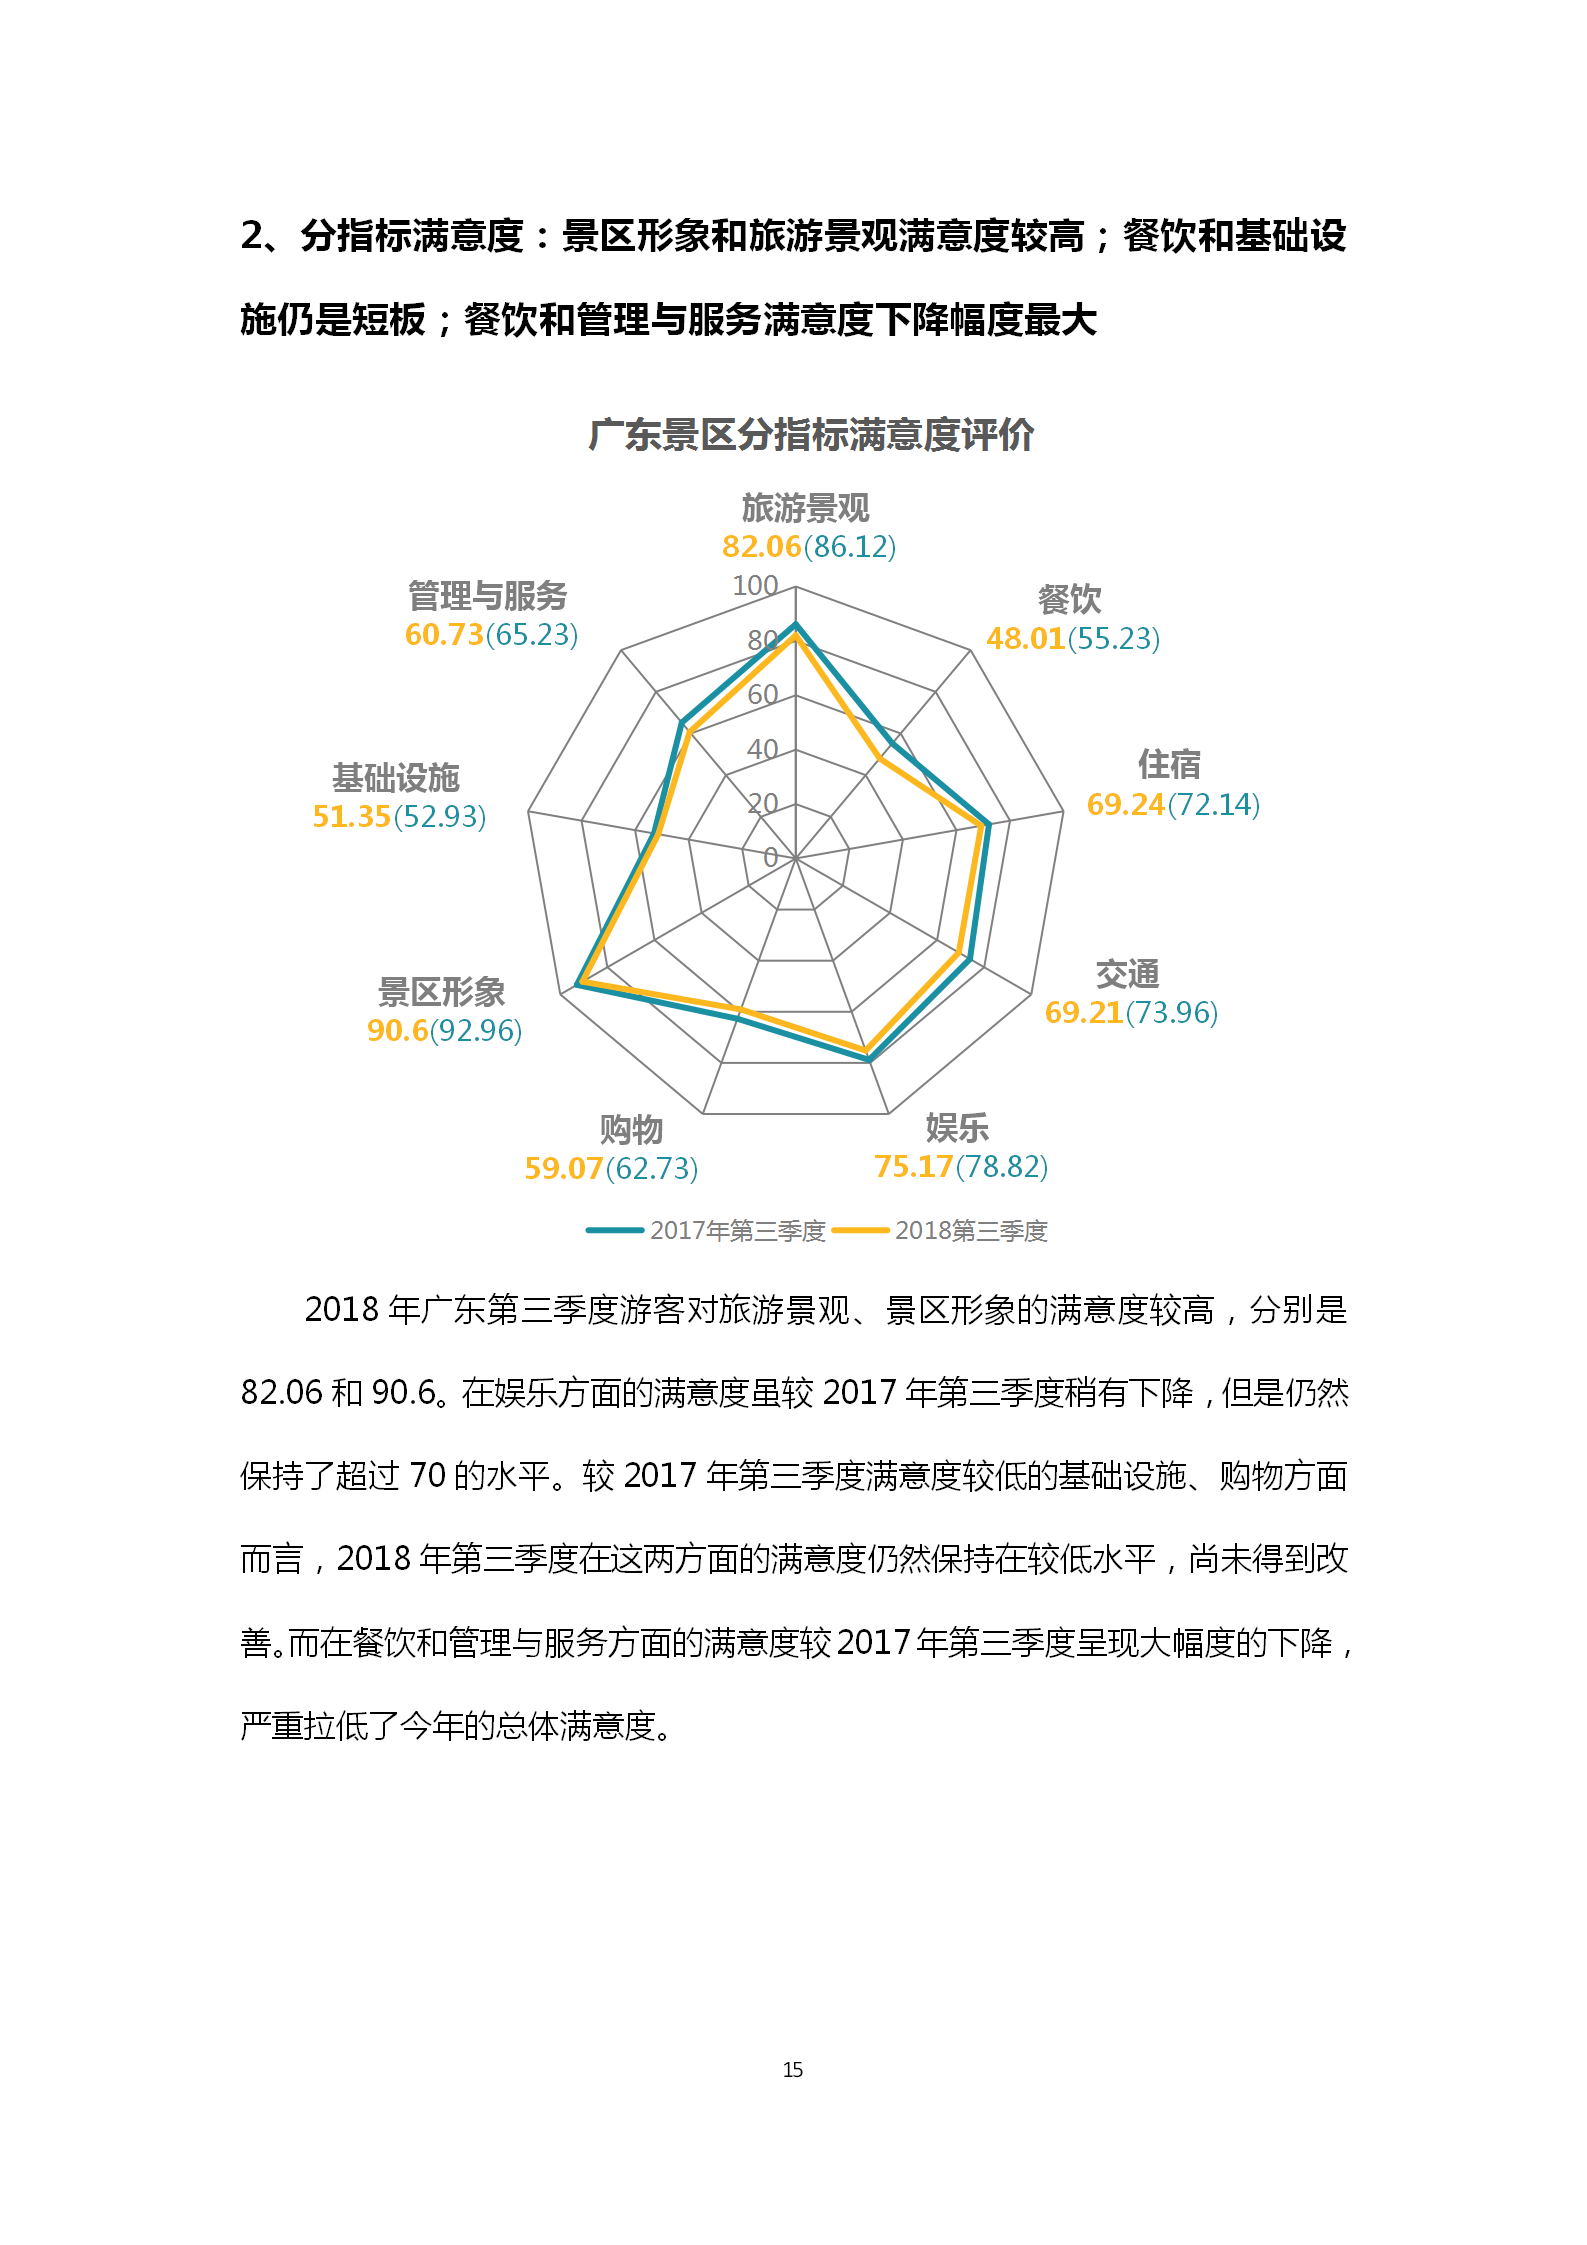 广东省旅游景区游客满意度大数据调查报告-2018年第三季度20181106_16